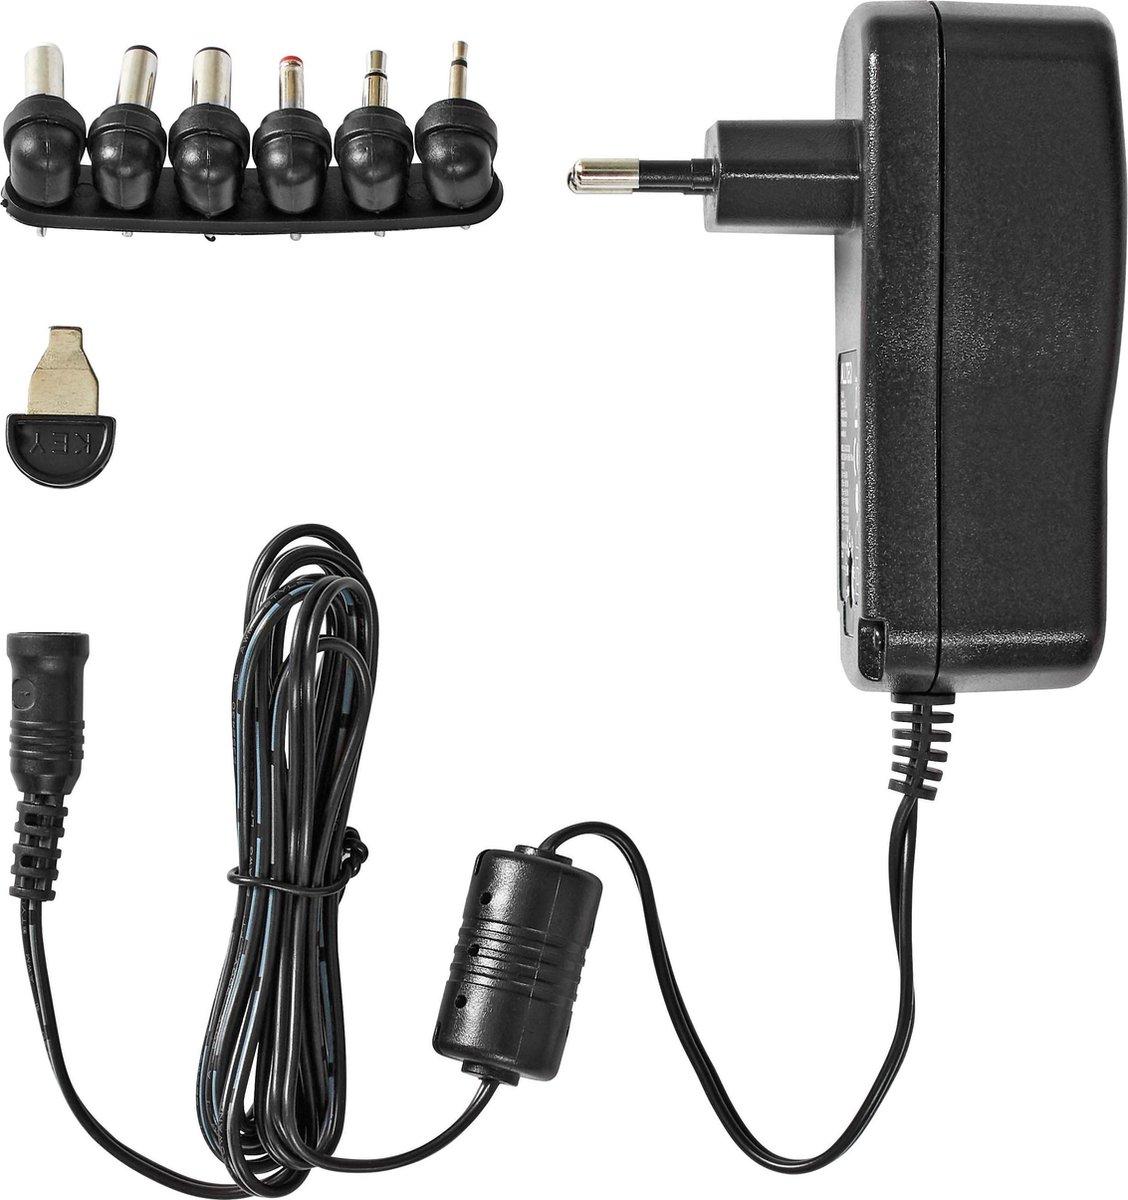 UNIVERSELE AC / DC Adapter Universele AC/DC Adapter, Voedingsstekkers: 6 stuks, Let op de polariteit bij de plug, Ingangsvoltage: 100-240 V AC, 50/60 Hz, Uitgangsvoltage: 9 / 12 /